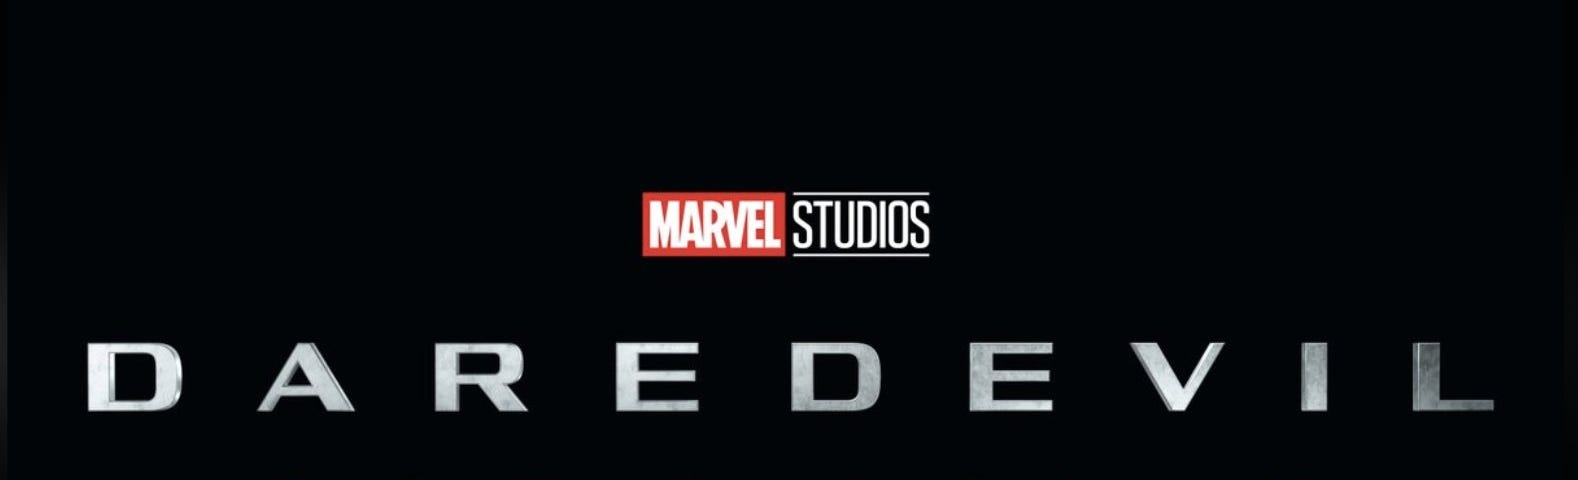 Marvel Studios Daredevil Born Again